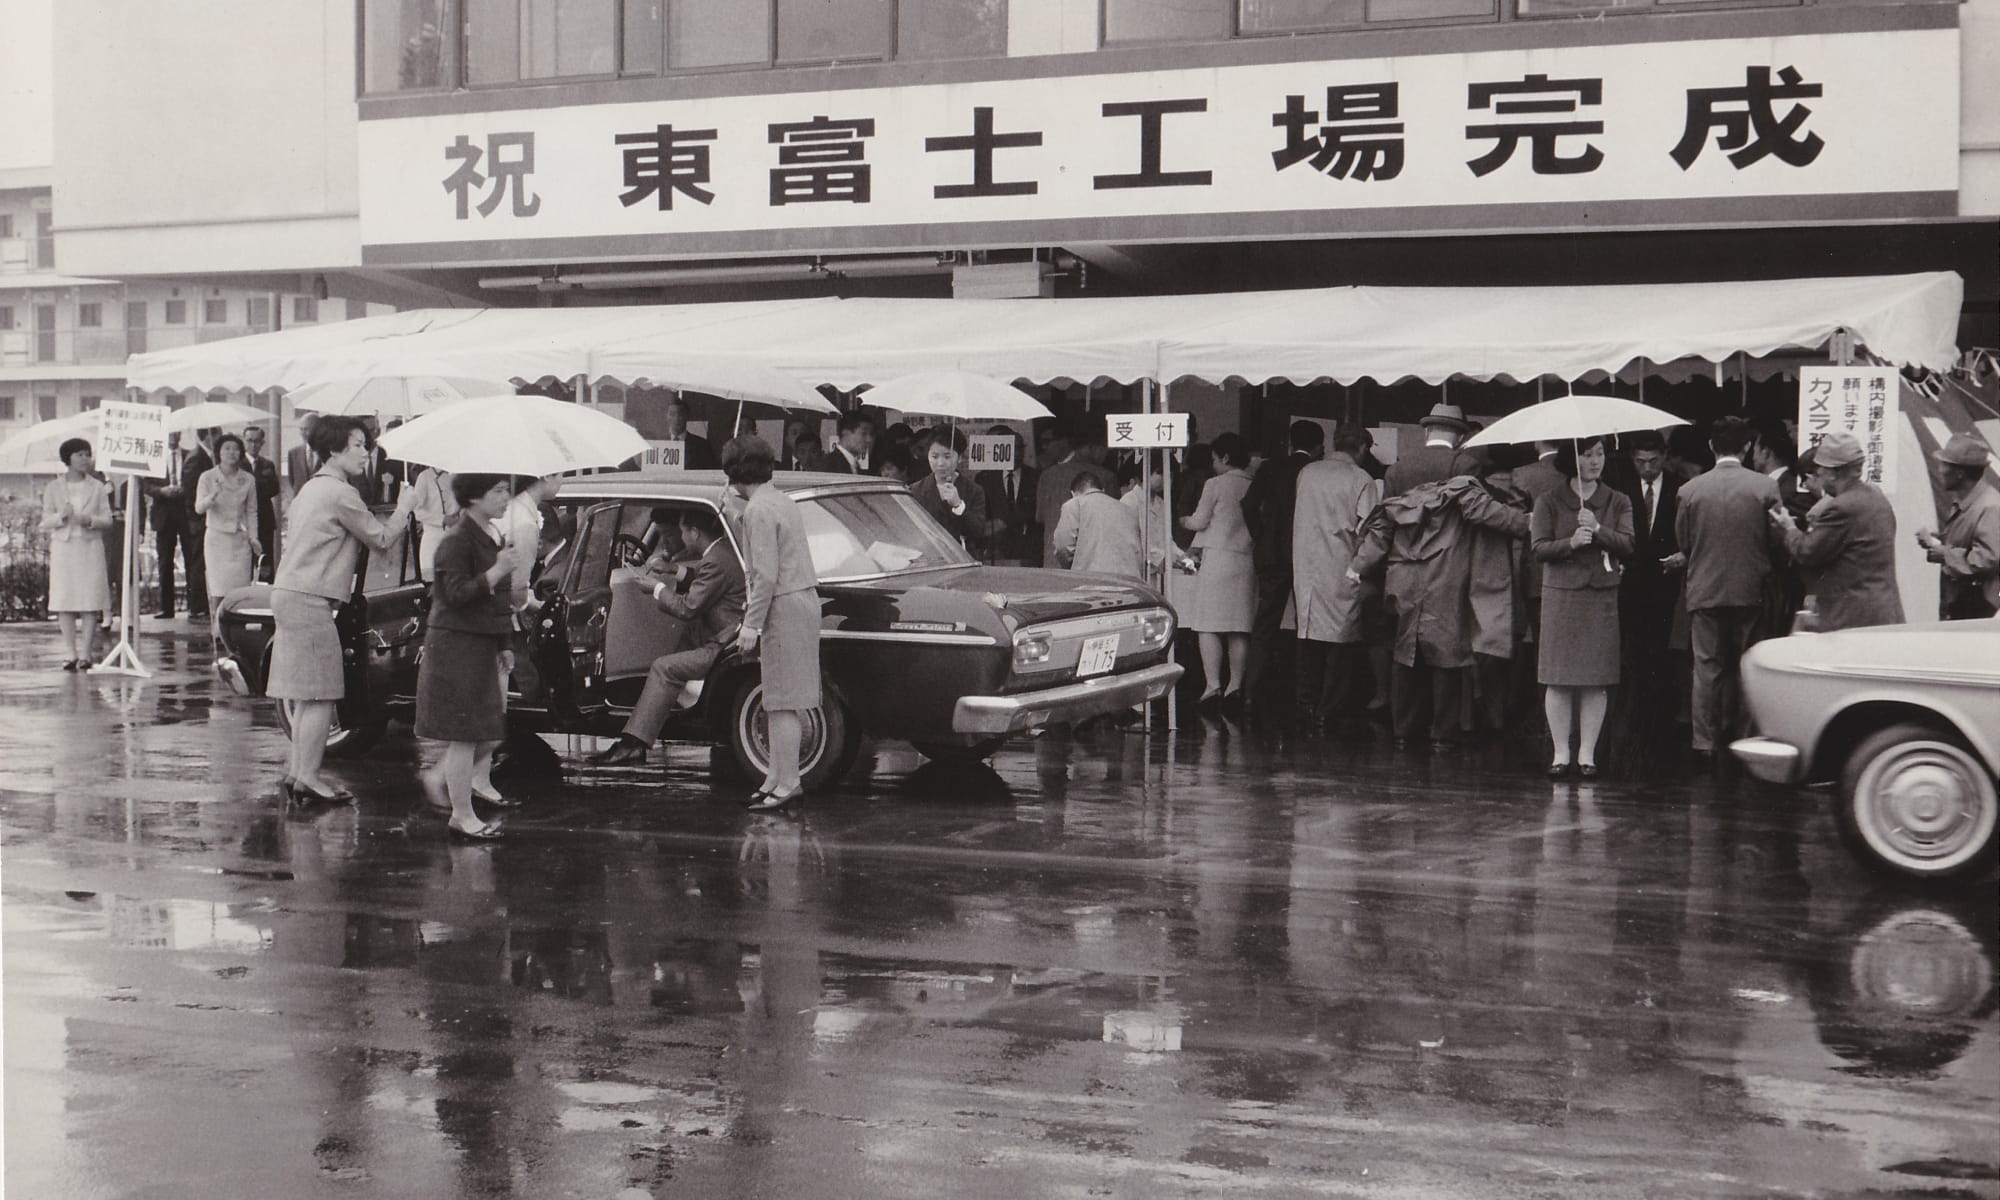 裾野市とトヨタグループの歴史の写真 #05